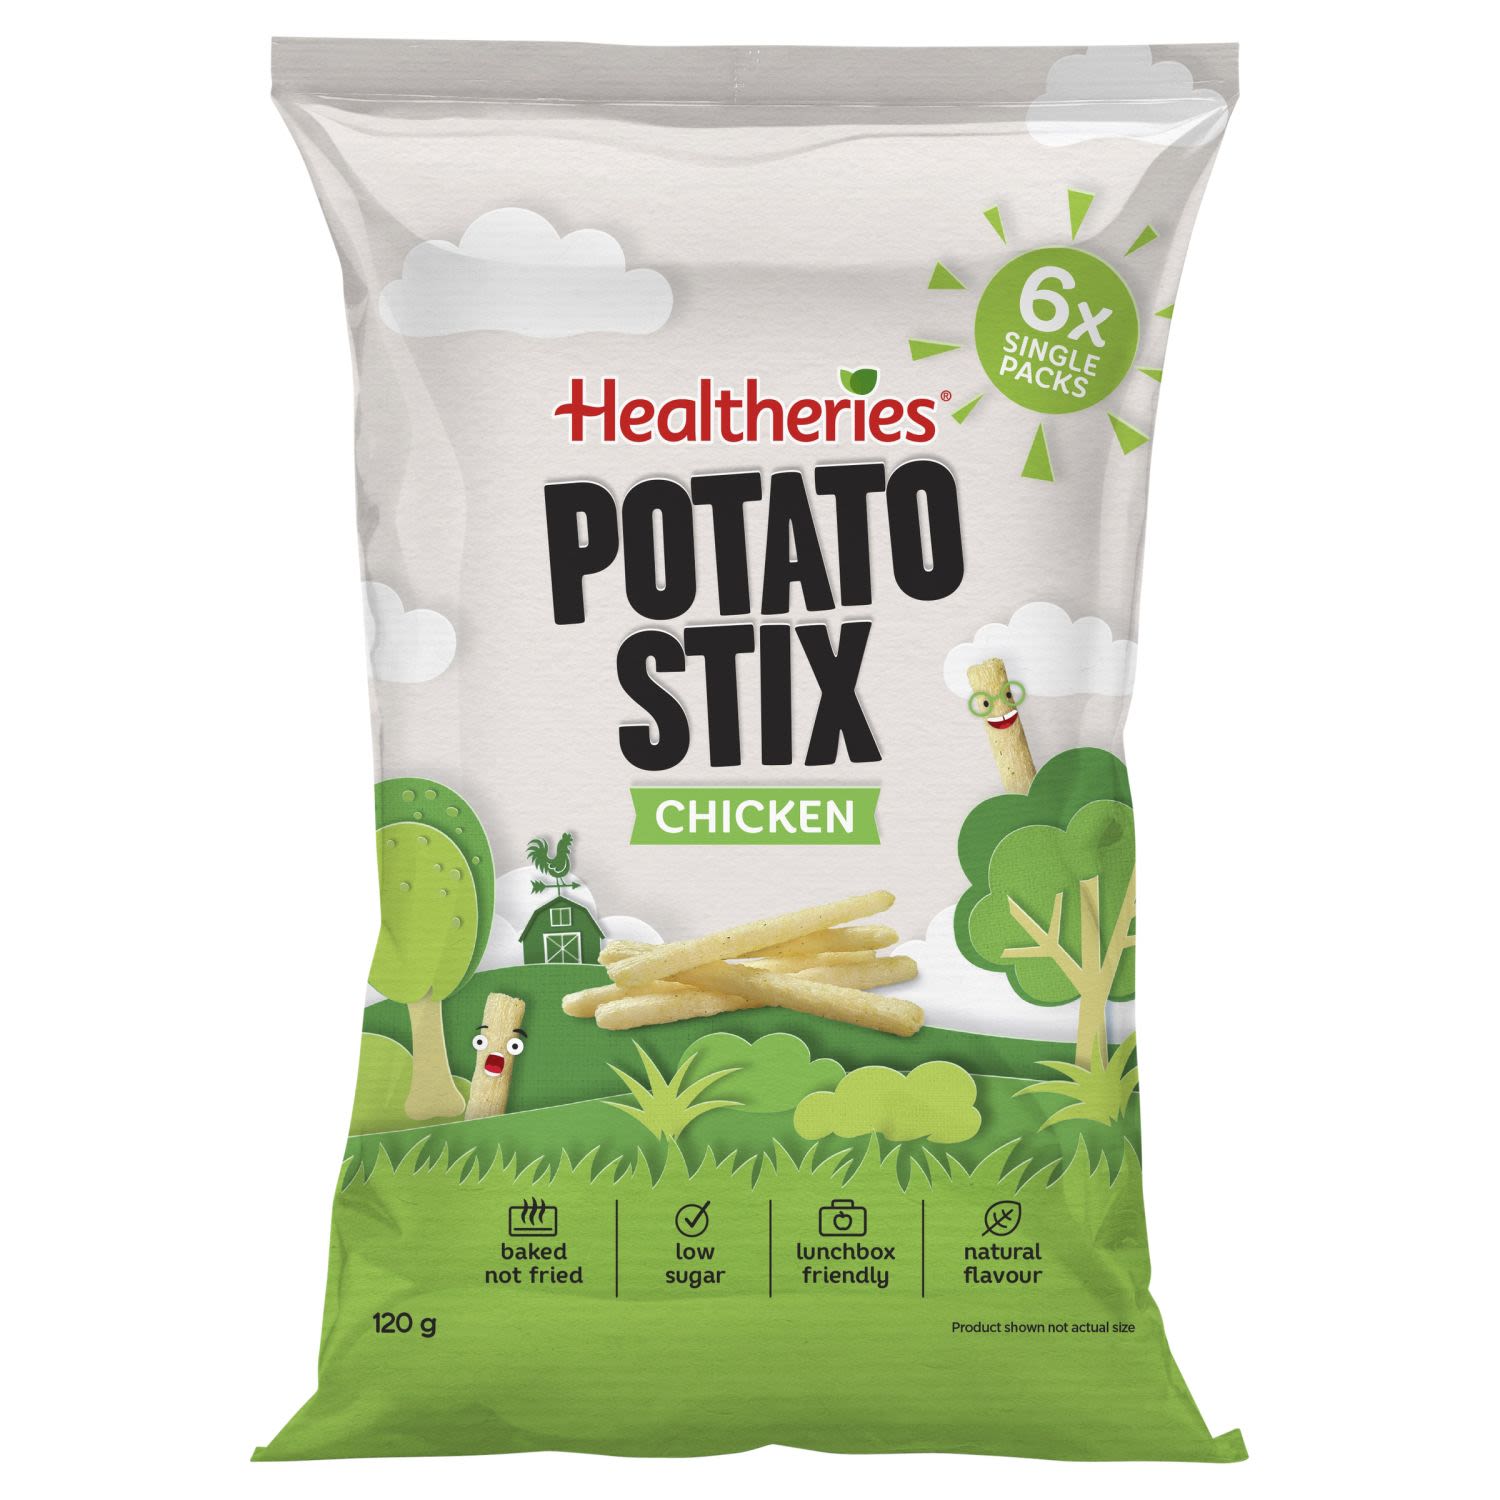 Healtheries Potato Stix Chicken Flavour, 6 Each